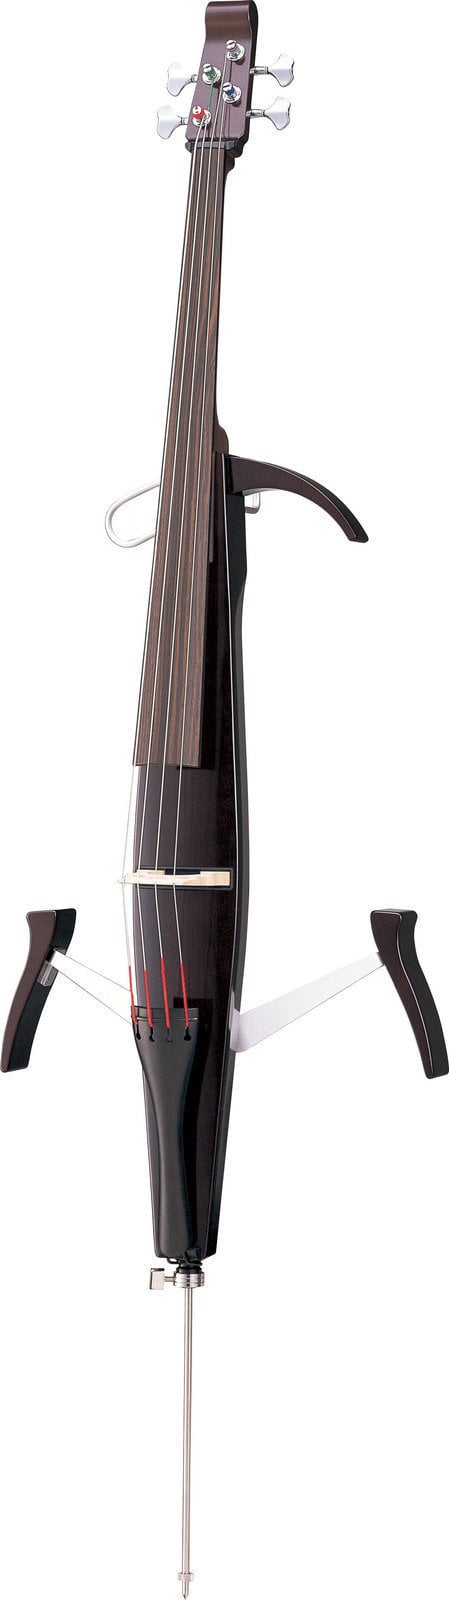 Electric Cello Yamaha SVC-50 4/4 Electric Cello